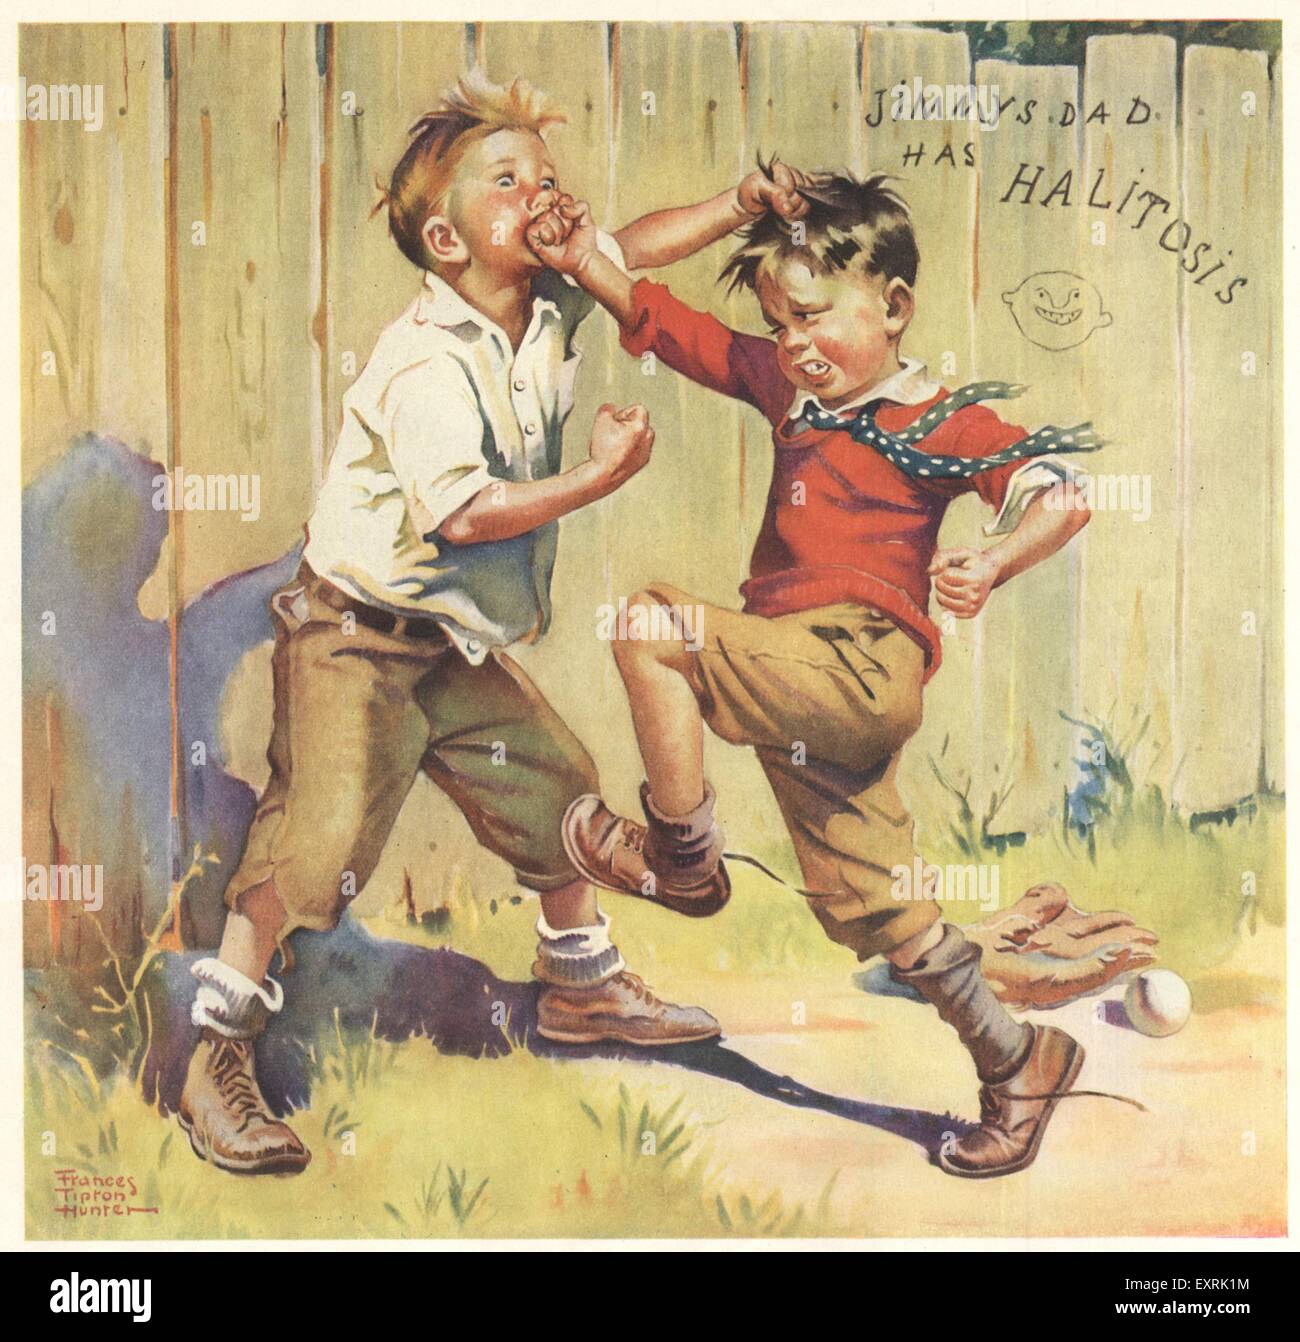 1930 USA Listerine Magazine annuncio pubblicitario Foto Stock